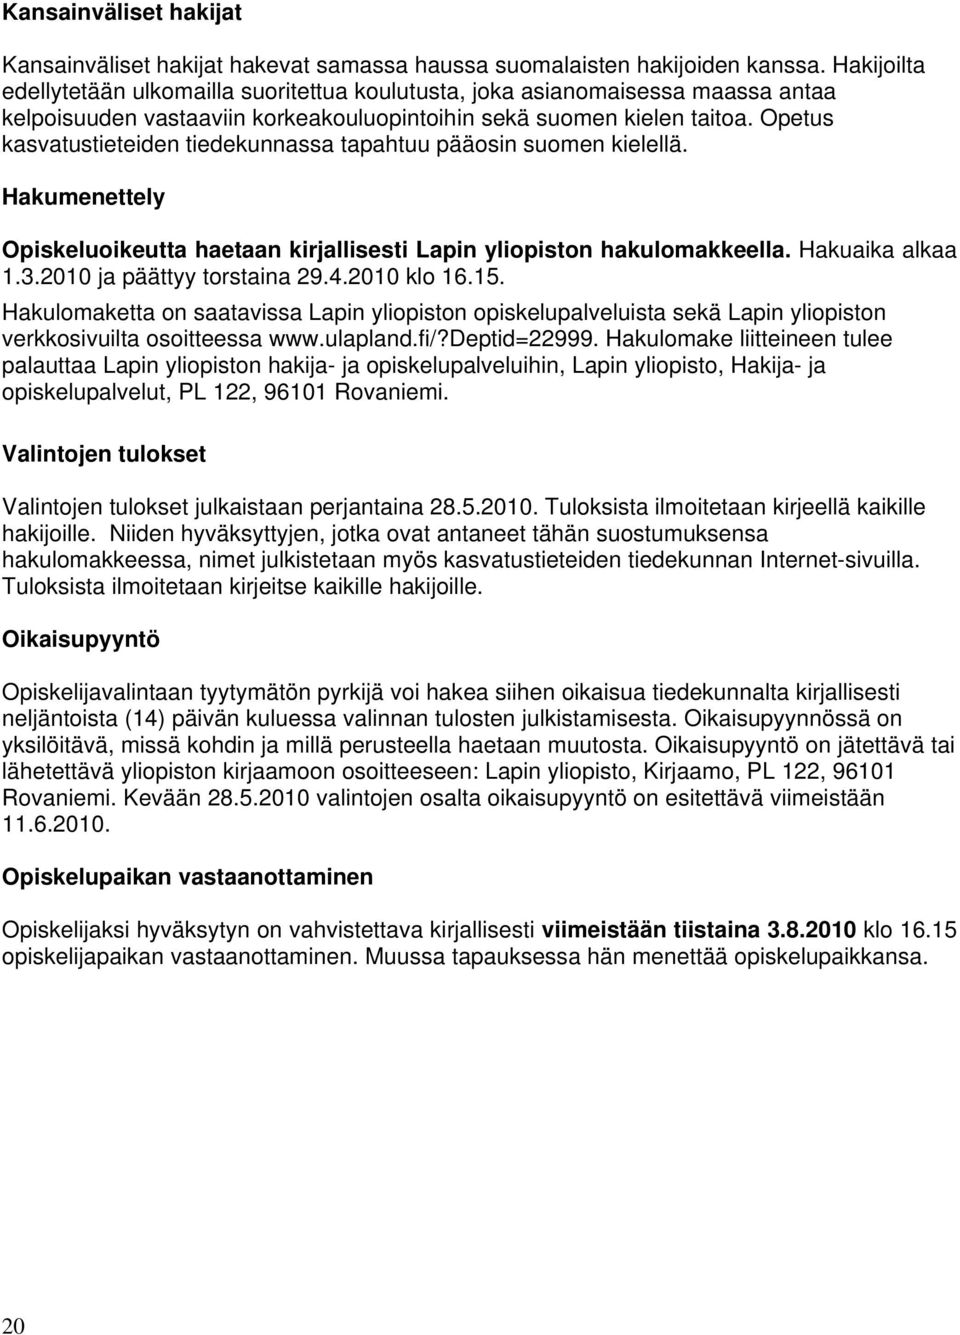 Opetus kasvatustieteiden tiedekunnassa tapahtuu pääosin suomen kielellä. Hakumenettely Opiskeluoikeutta haetaan kirjallisesti Lapin yliopiston hakulomakkeella. Hakuaika alkaa 1.3.